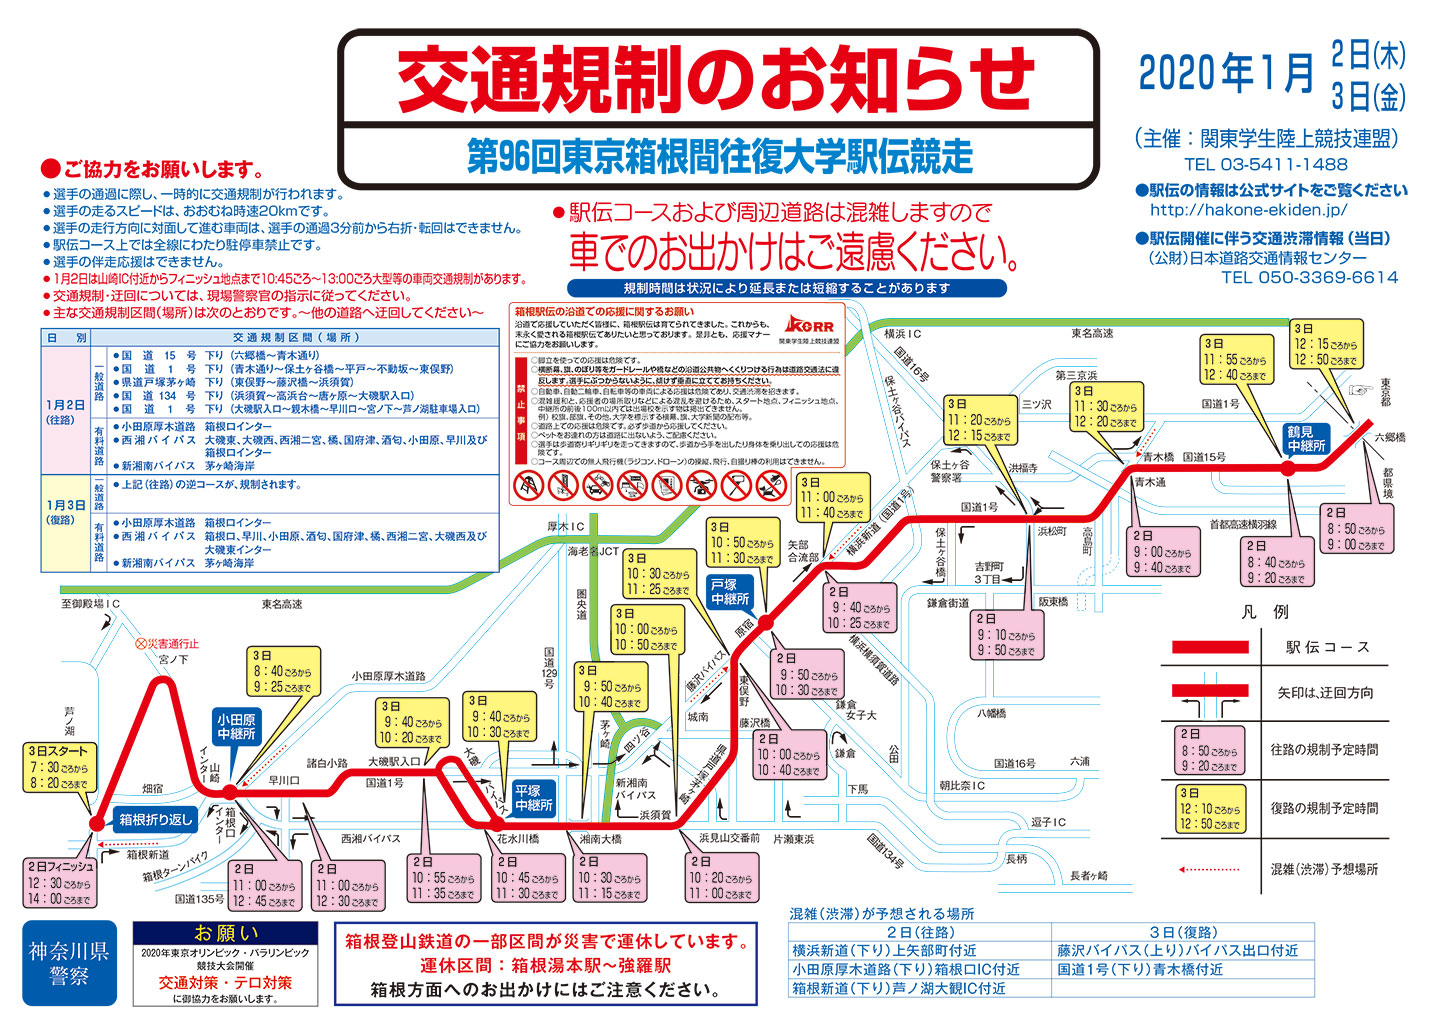 2020年 箱根駅伝による横浜駅周辺の交通規制、規制時間と場所